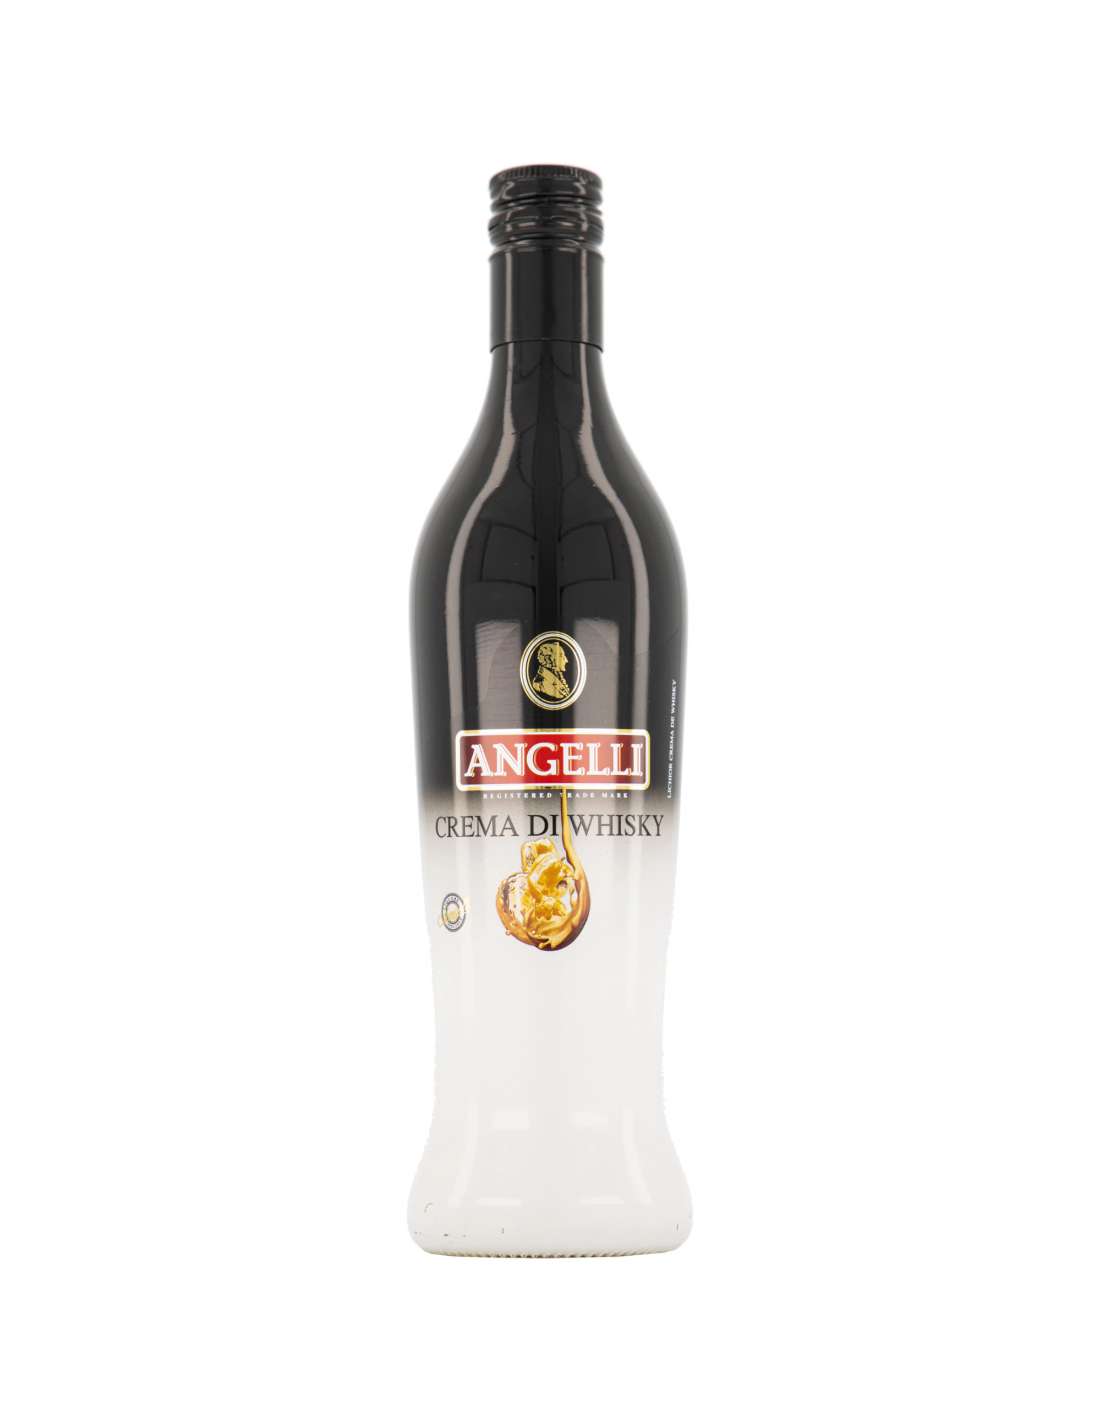 Lichior Angelli Crema de Whisky, 15% alc., 0.5L, Romania alcooldiscount.ro